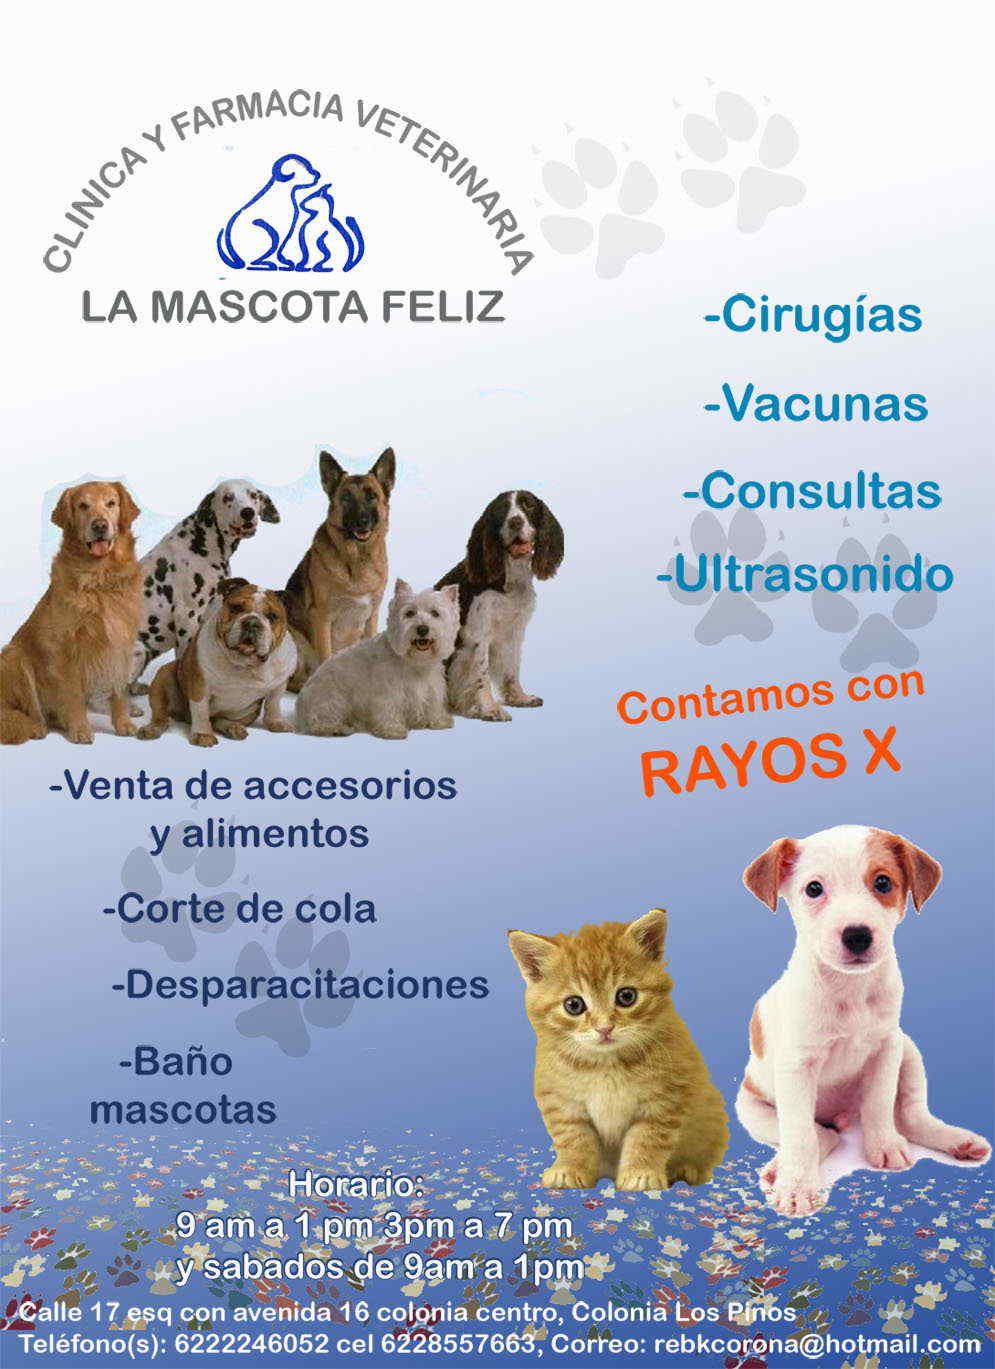 La Mascota Feliz-Médico veterinario zootecnista,
ultrasonidos y rayos x.                    